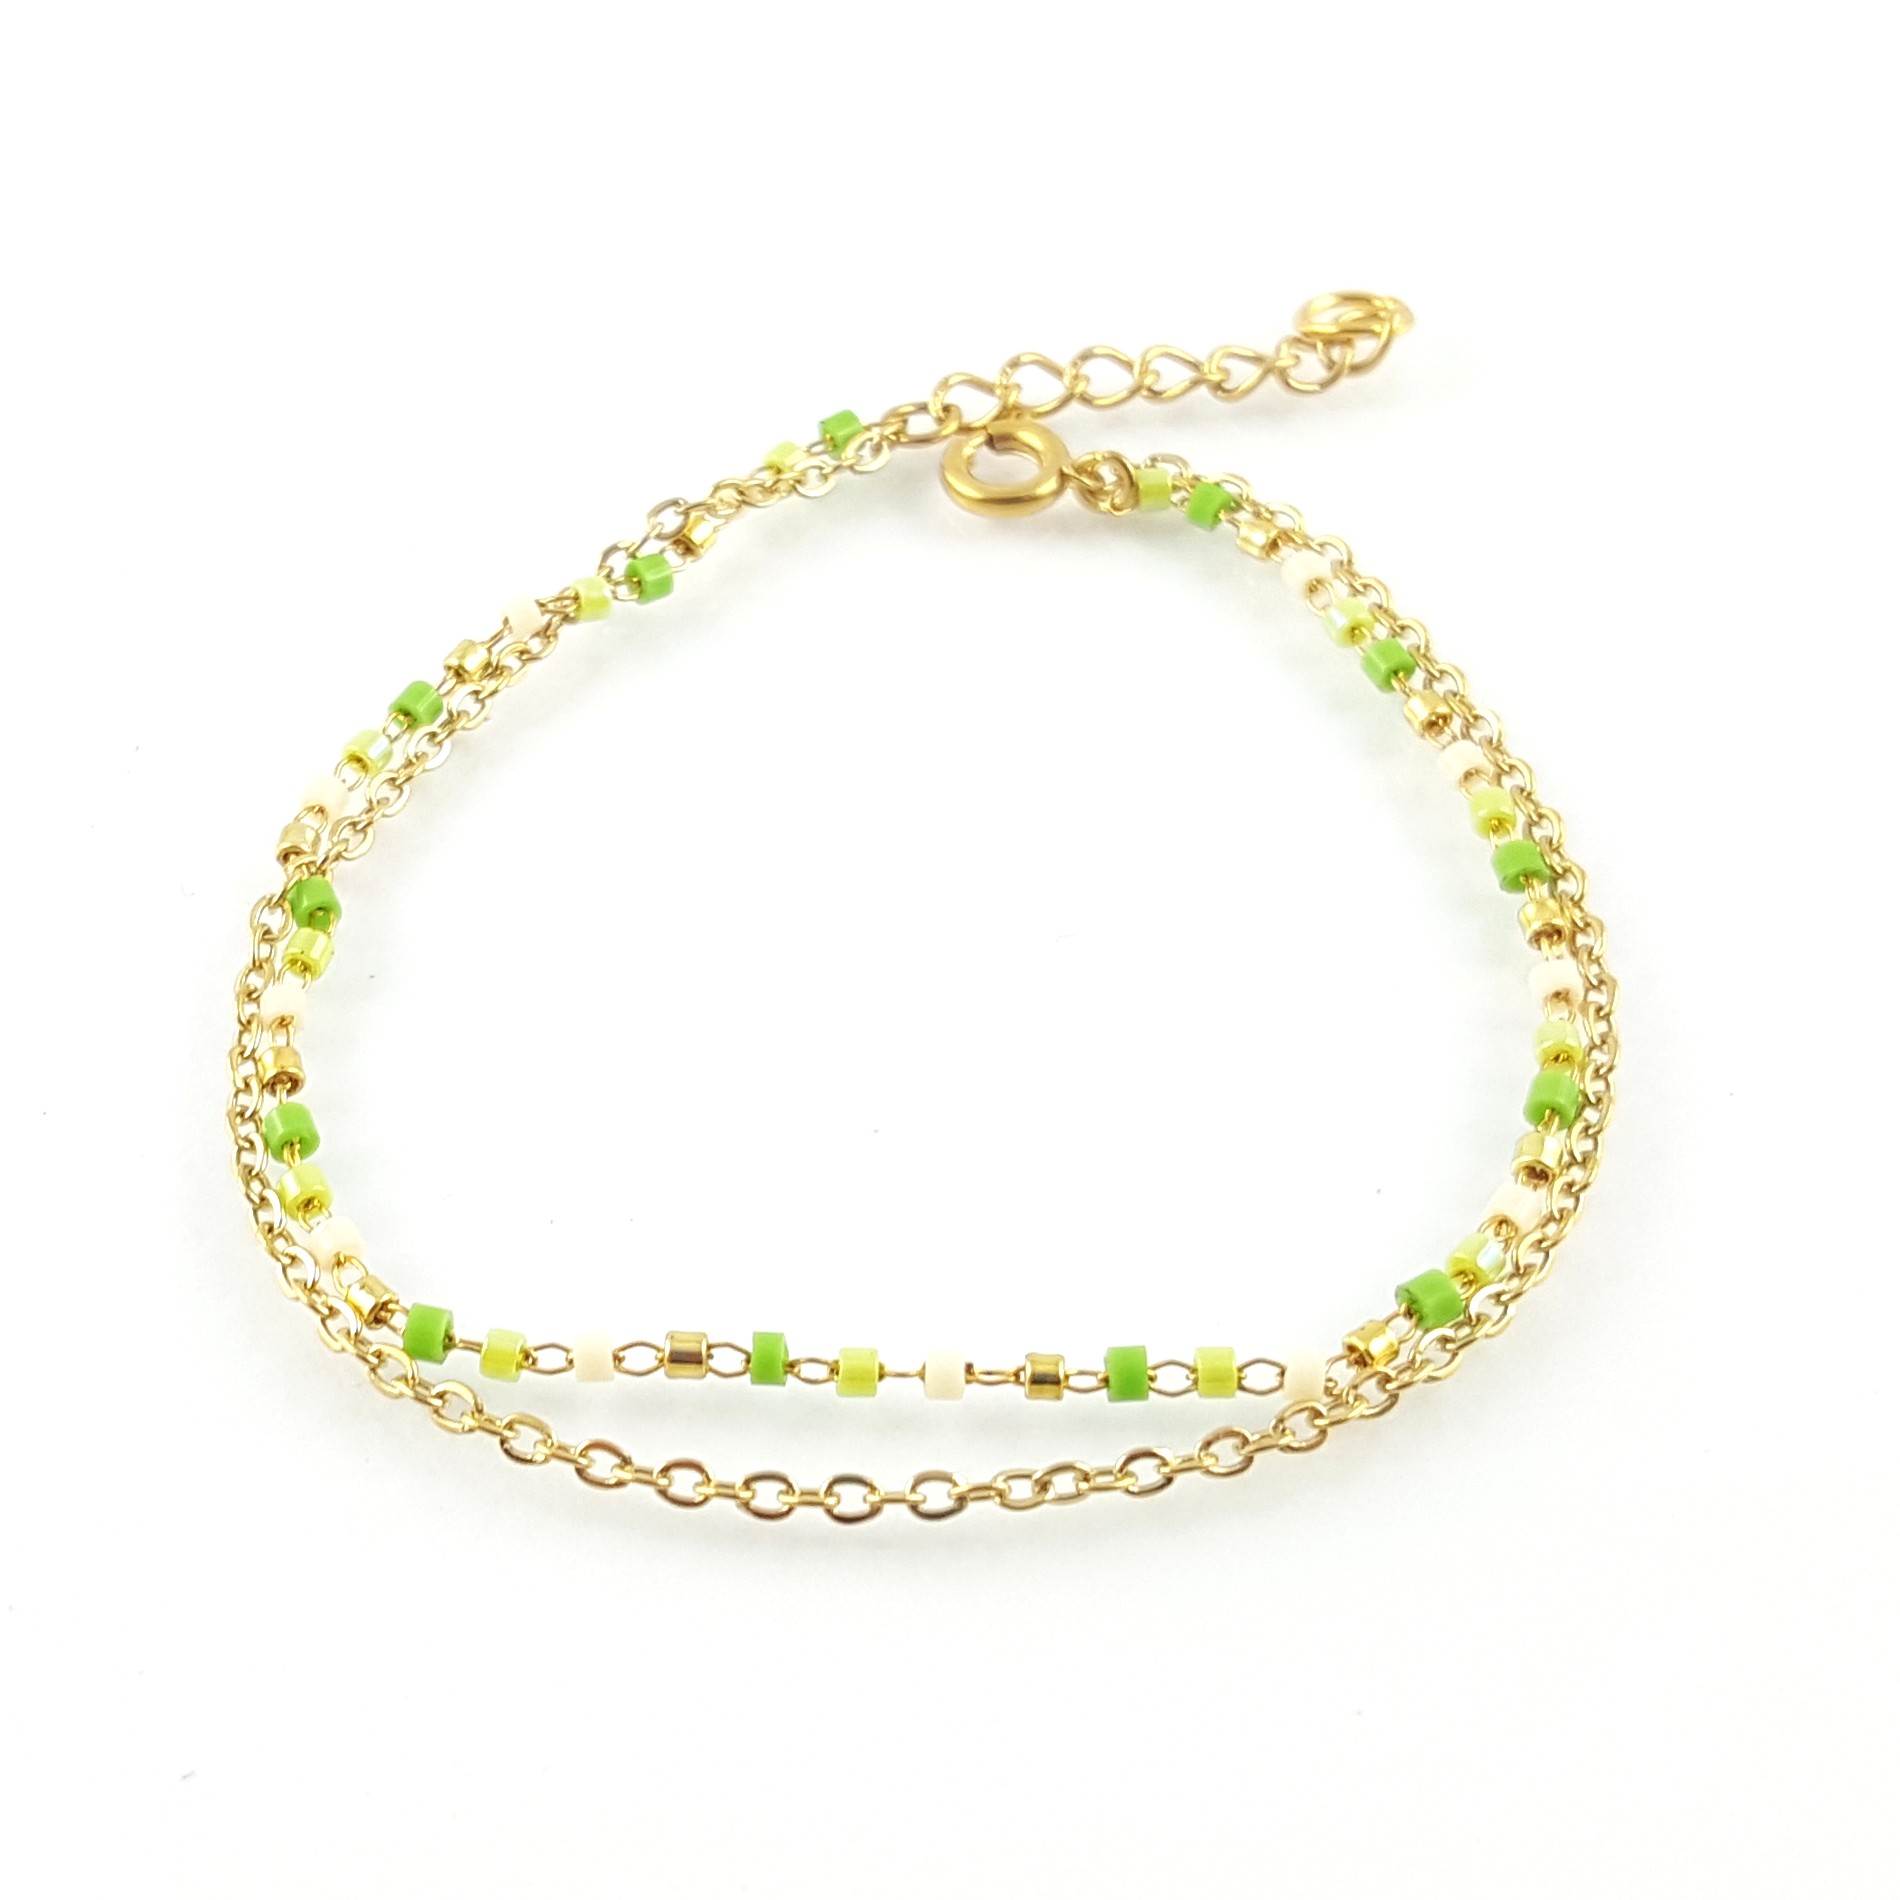 Bracelet double rang acier et perles miyuki - identités bijoux france